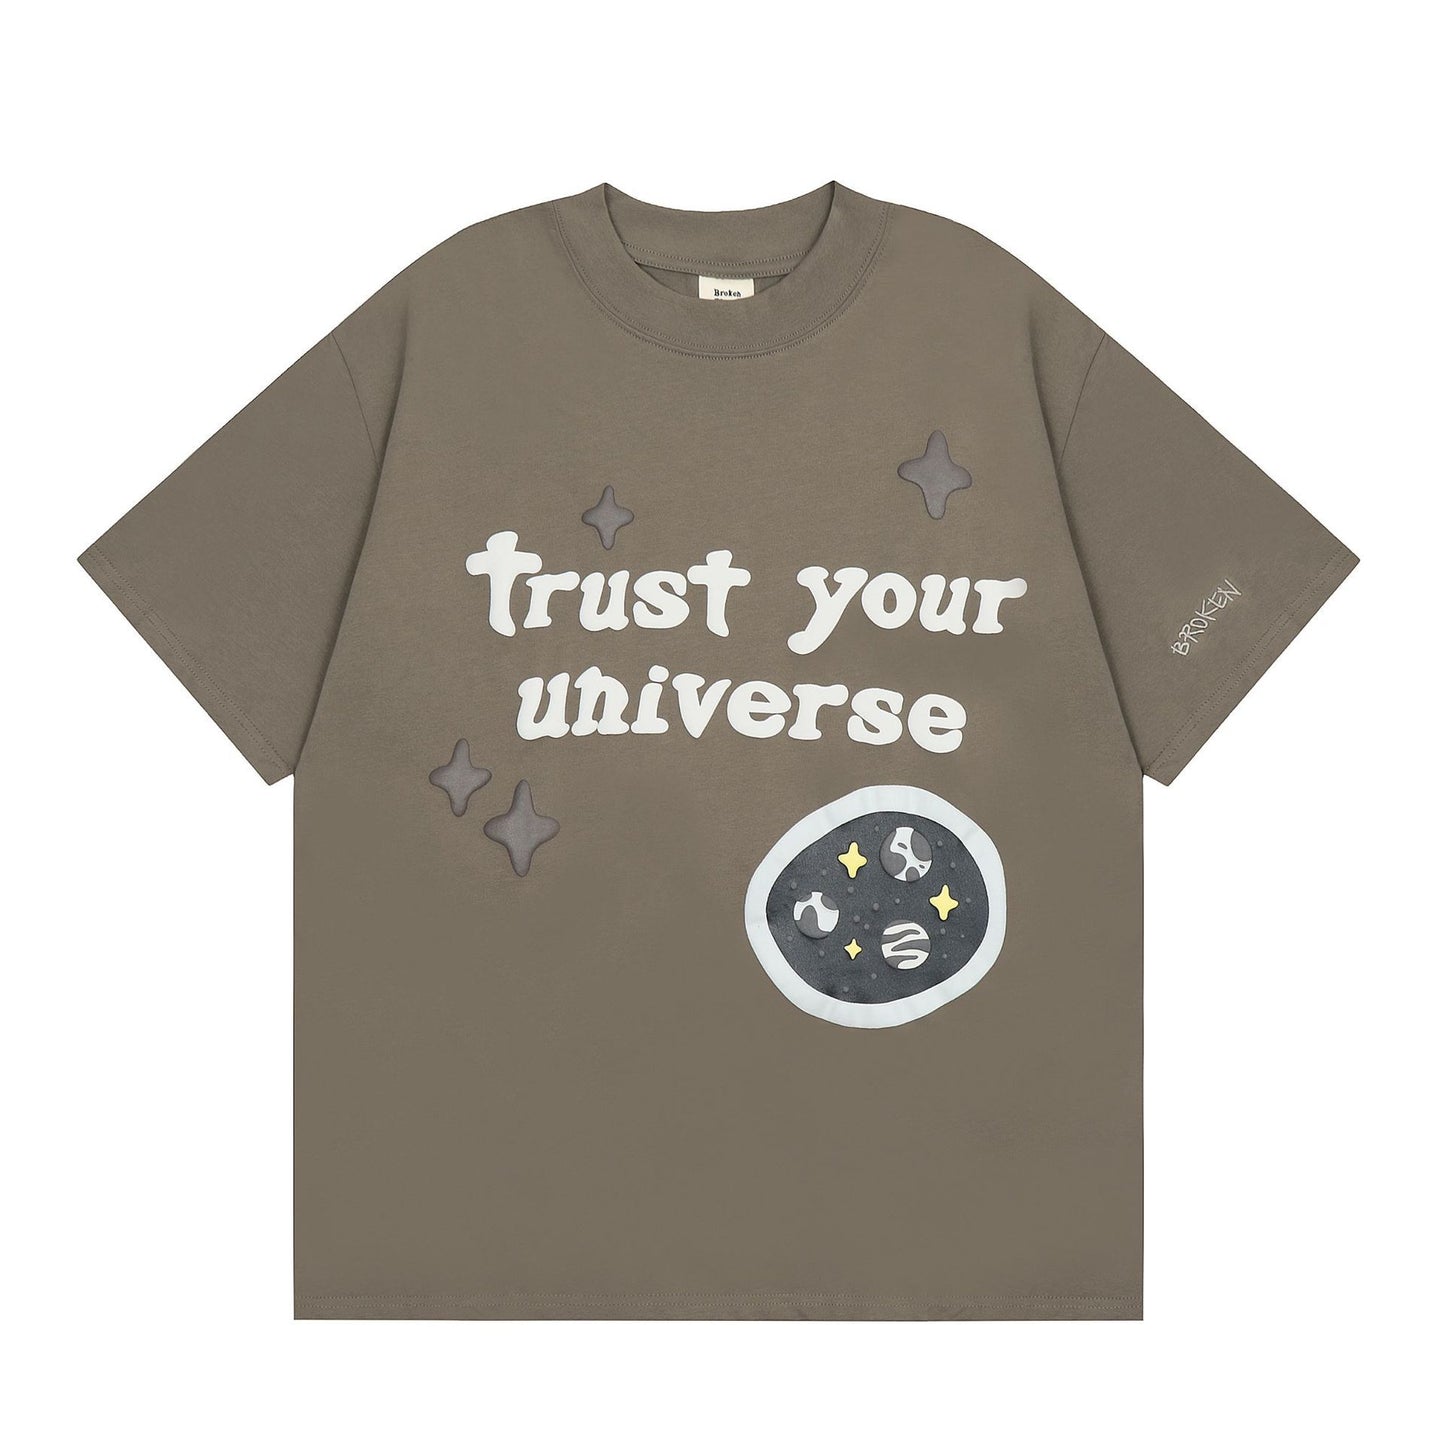 Broken Planet Men's Women's T-shirt 'trust your universe' Tee